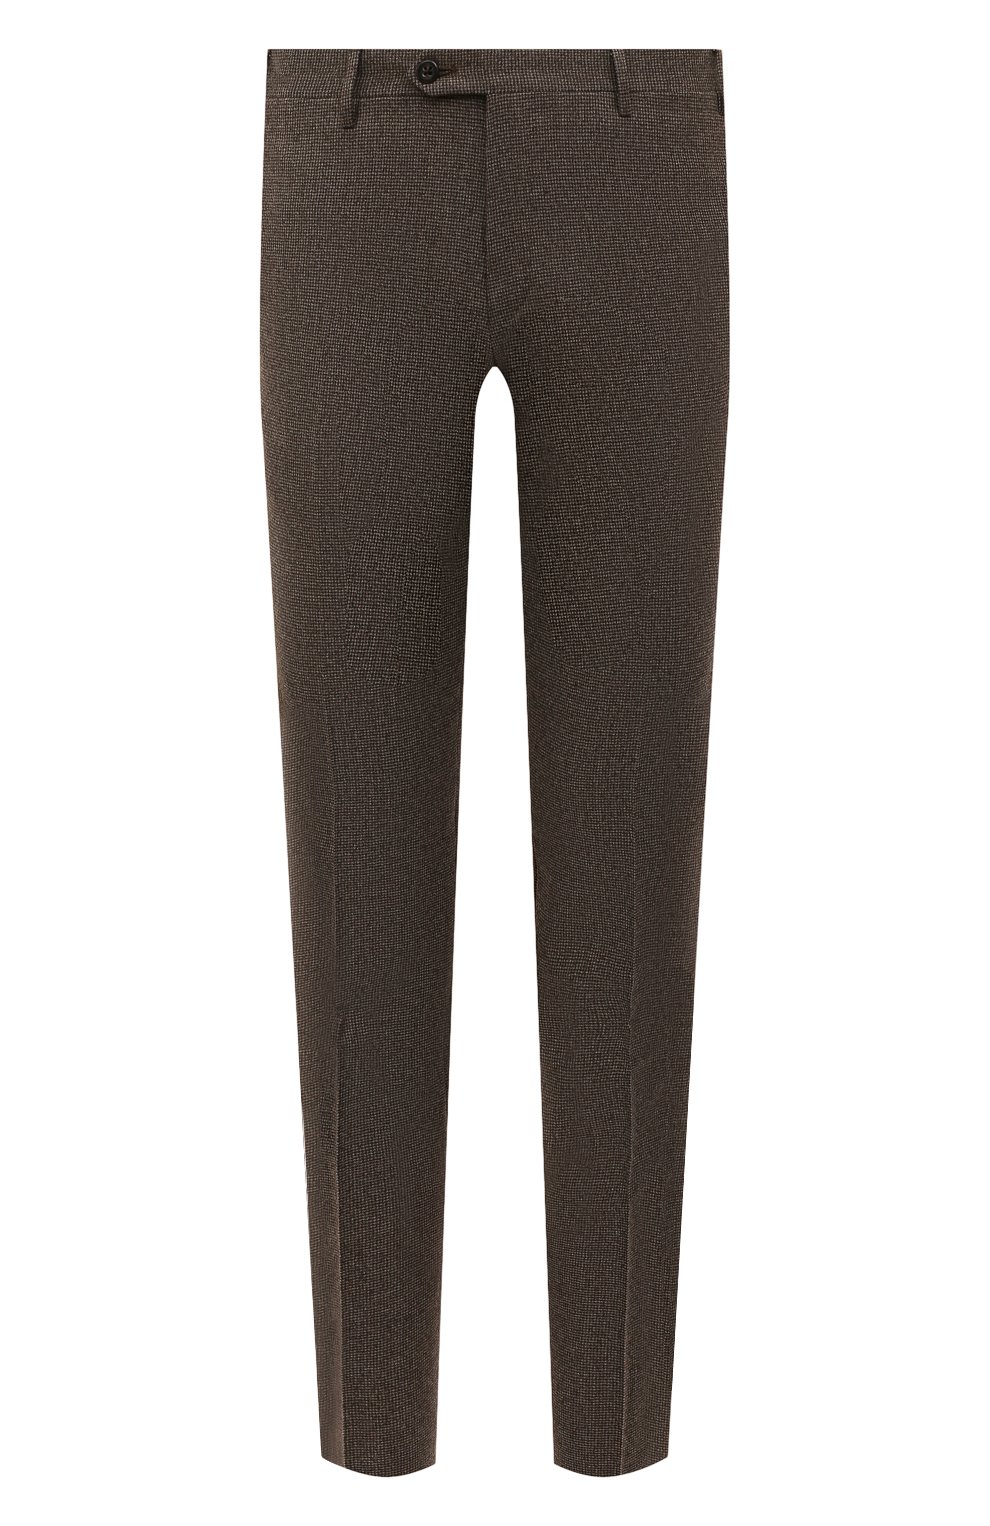 Мужские шерстяные брюки CORNELIANI коричневого цвета, арт. 905B01-2817226/02 | Фото 1 (Материал внешний: Шерсть; Длина (брюки, джинсы): Стандартные; Стили: Классический; Случай: Формальный; Материал подклада: Вискоза)